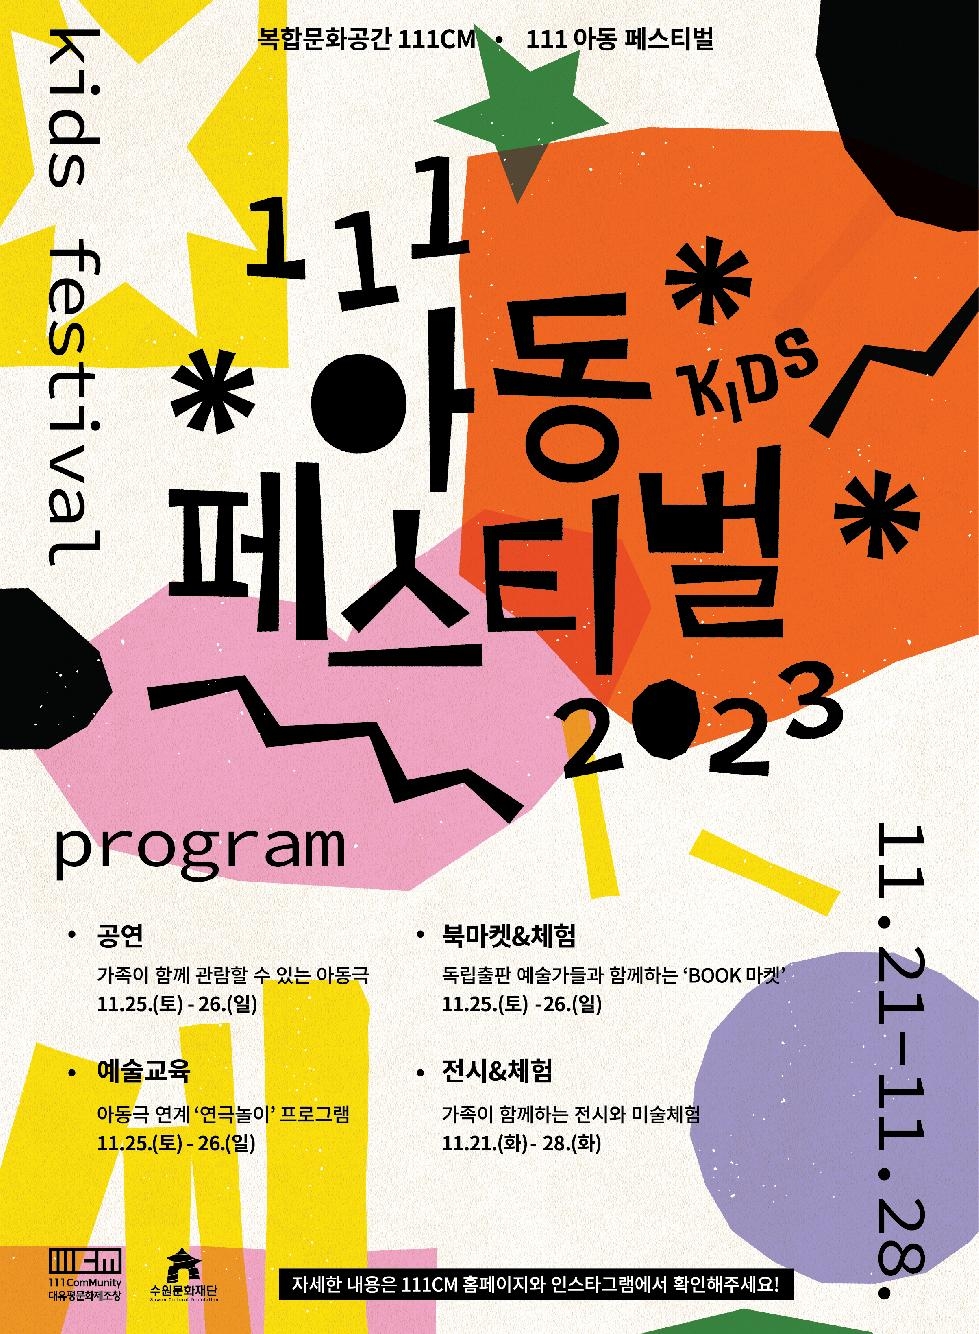 수원문화재단, 가족을 위한 ‘111아동페스티벌’ 개최